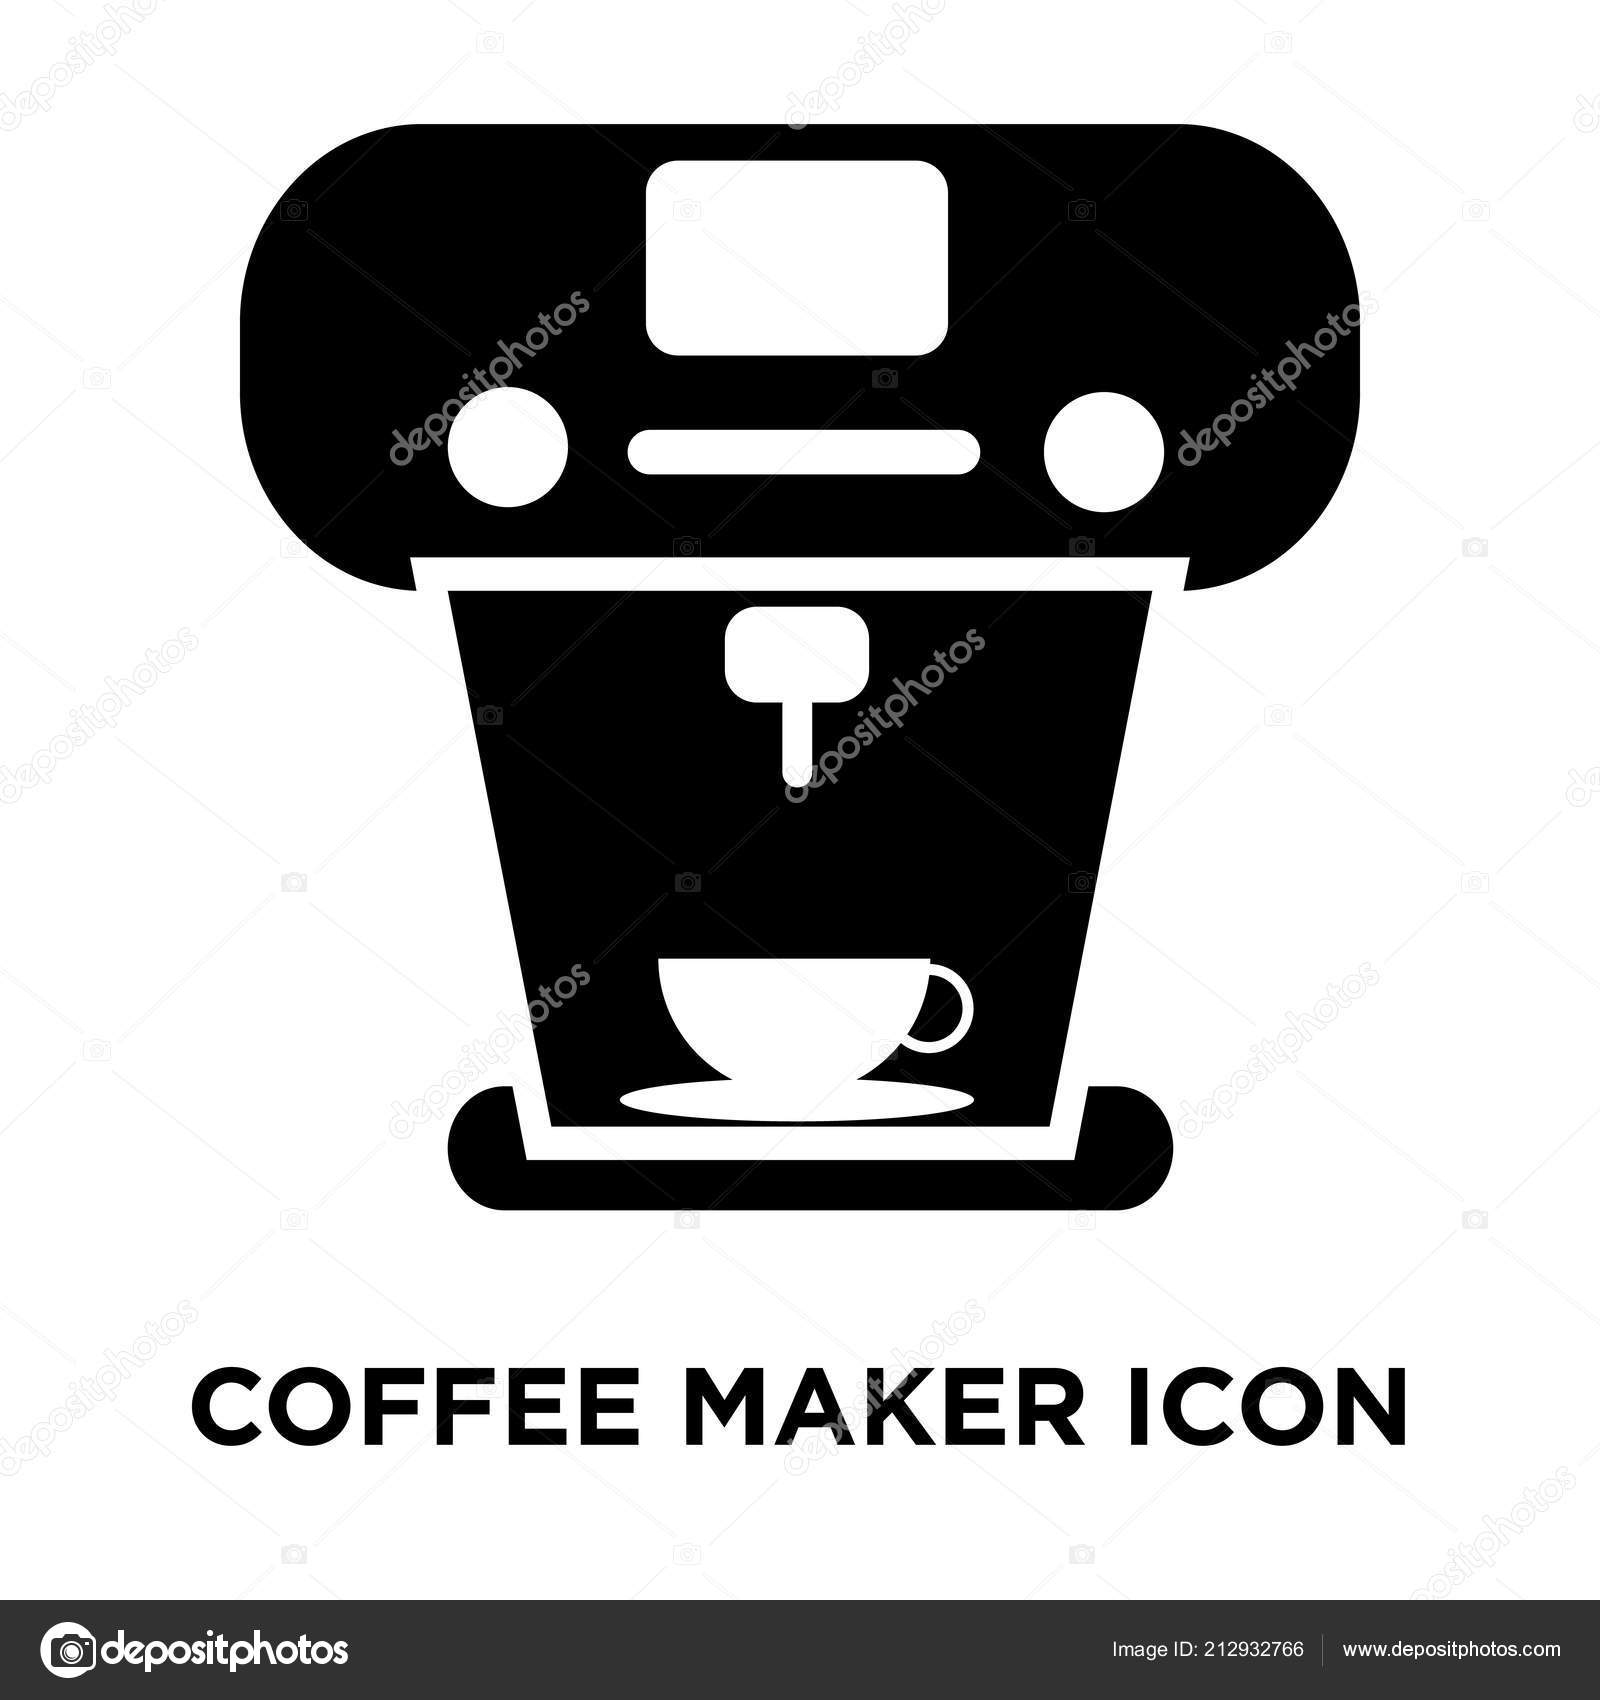 Biểu tượng máy pha cà phê là biểu tượng của sự tiện lợi và độc đáo. Hãy tìm hiểu hình ảnh liên quan để được giới thiệu về biểu tượng này cũng như tìm hiểu về những sản phẩm máy pha cà phê đáng chú ý.